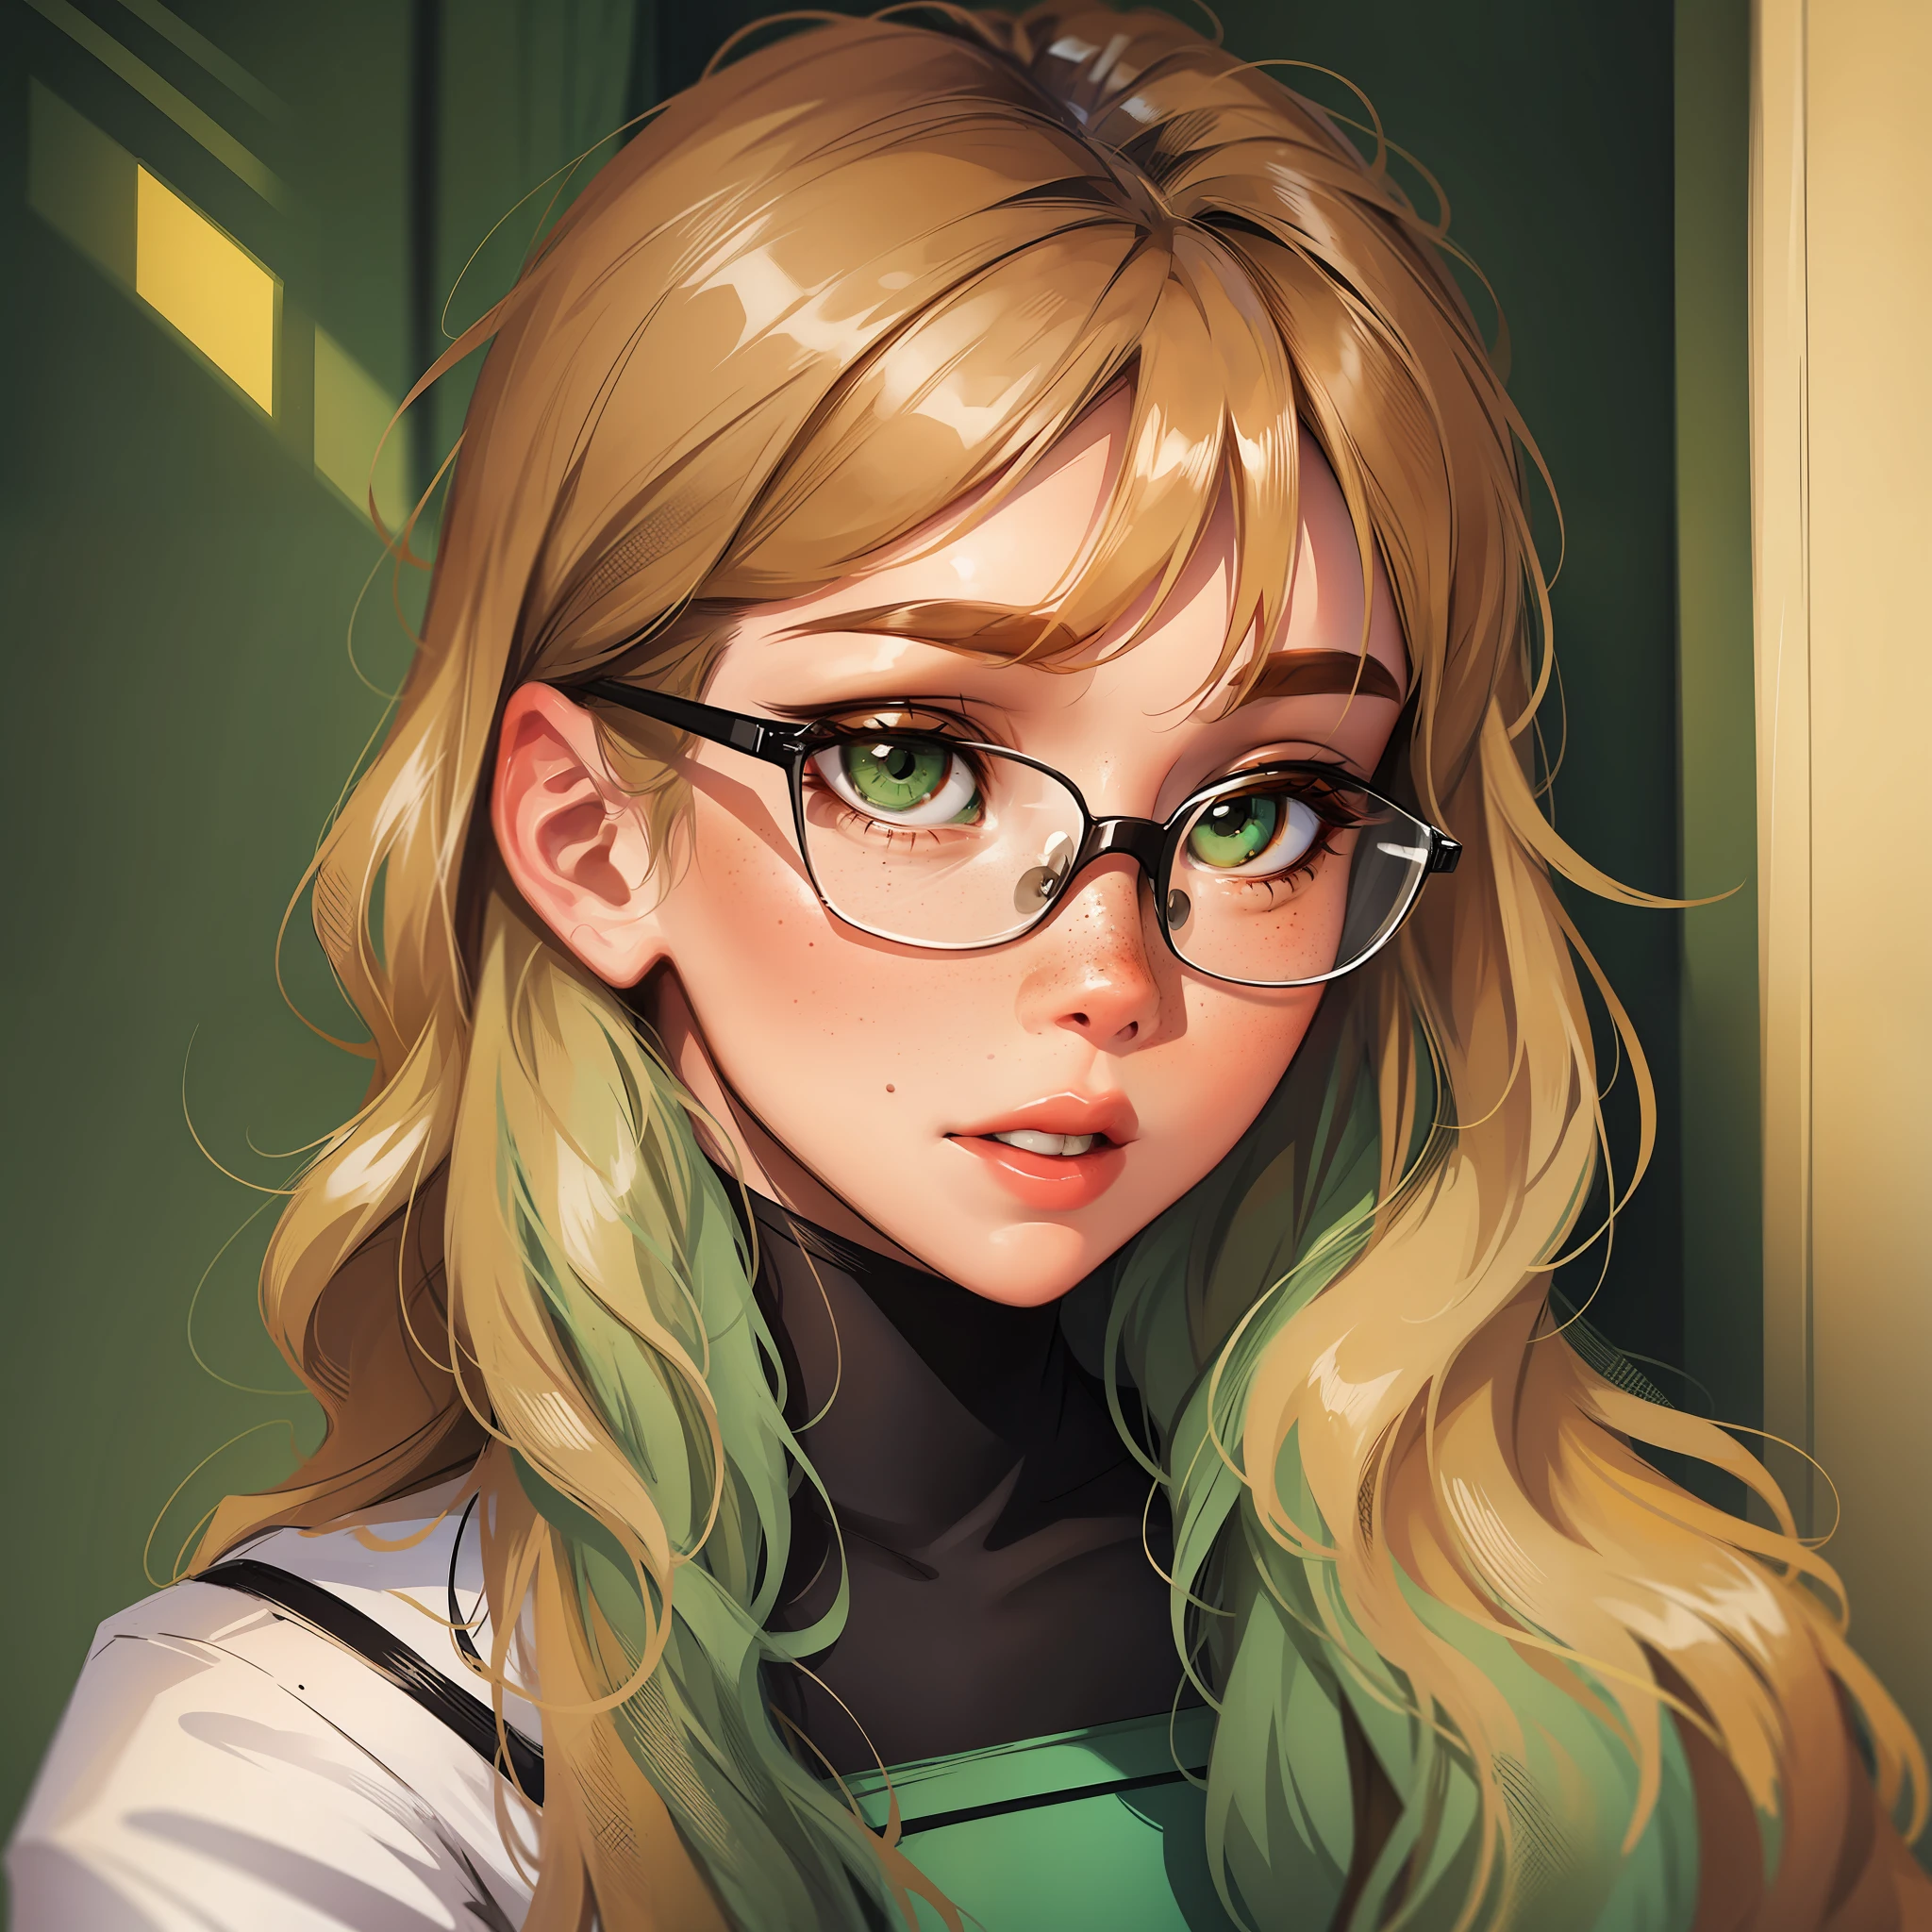 Menina com sardas, óculos e olhos verdes